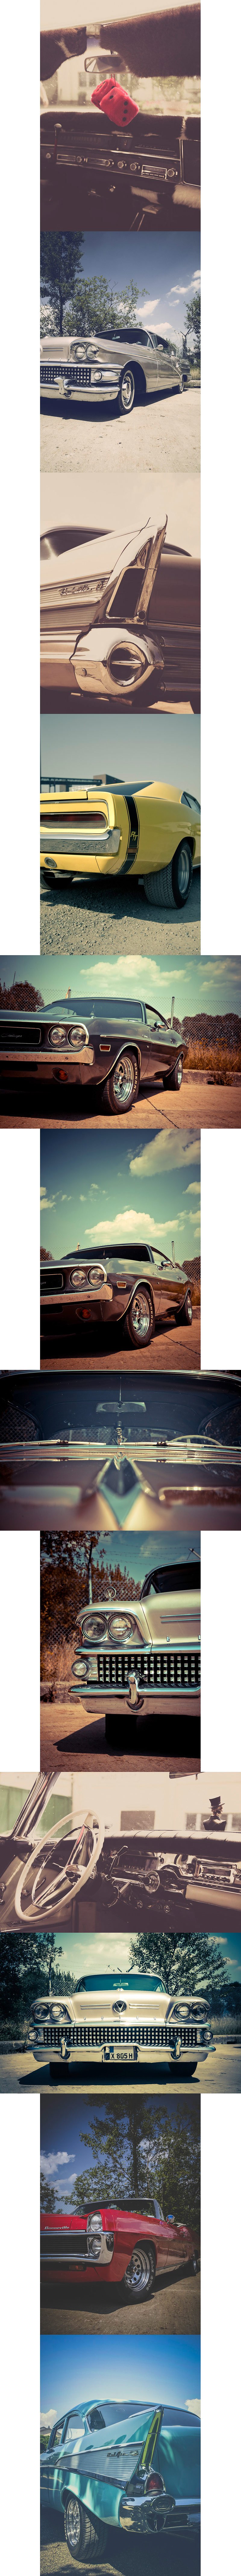 美式肌肉车高清照片集v1 American Muscle Cars Vol. 1 (12x)插图